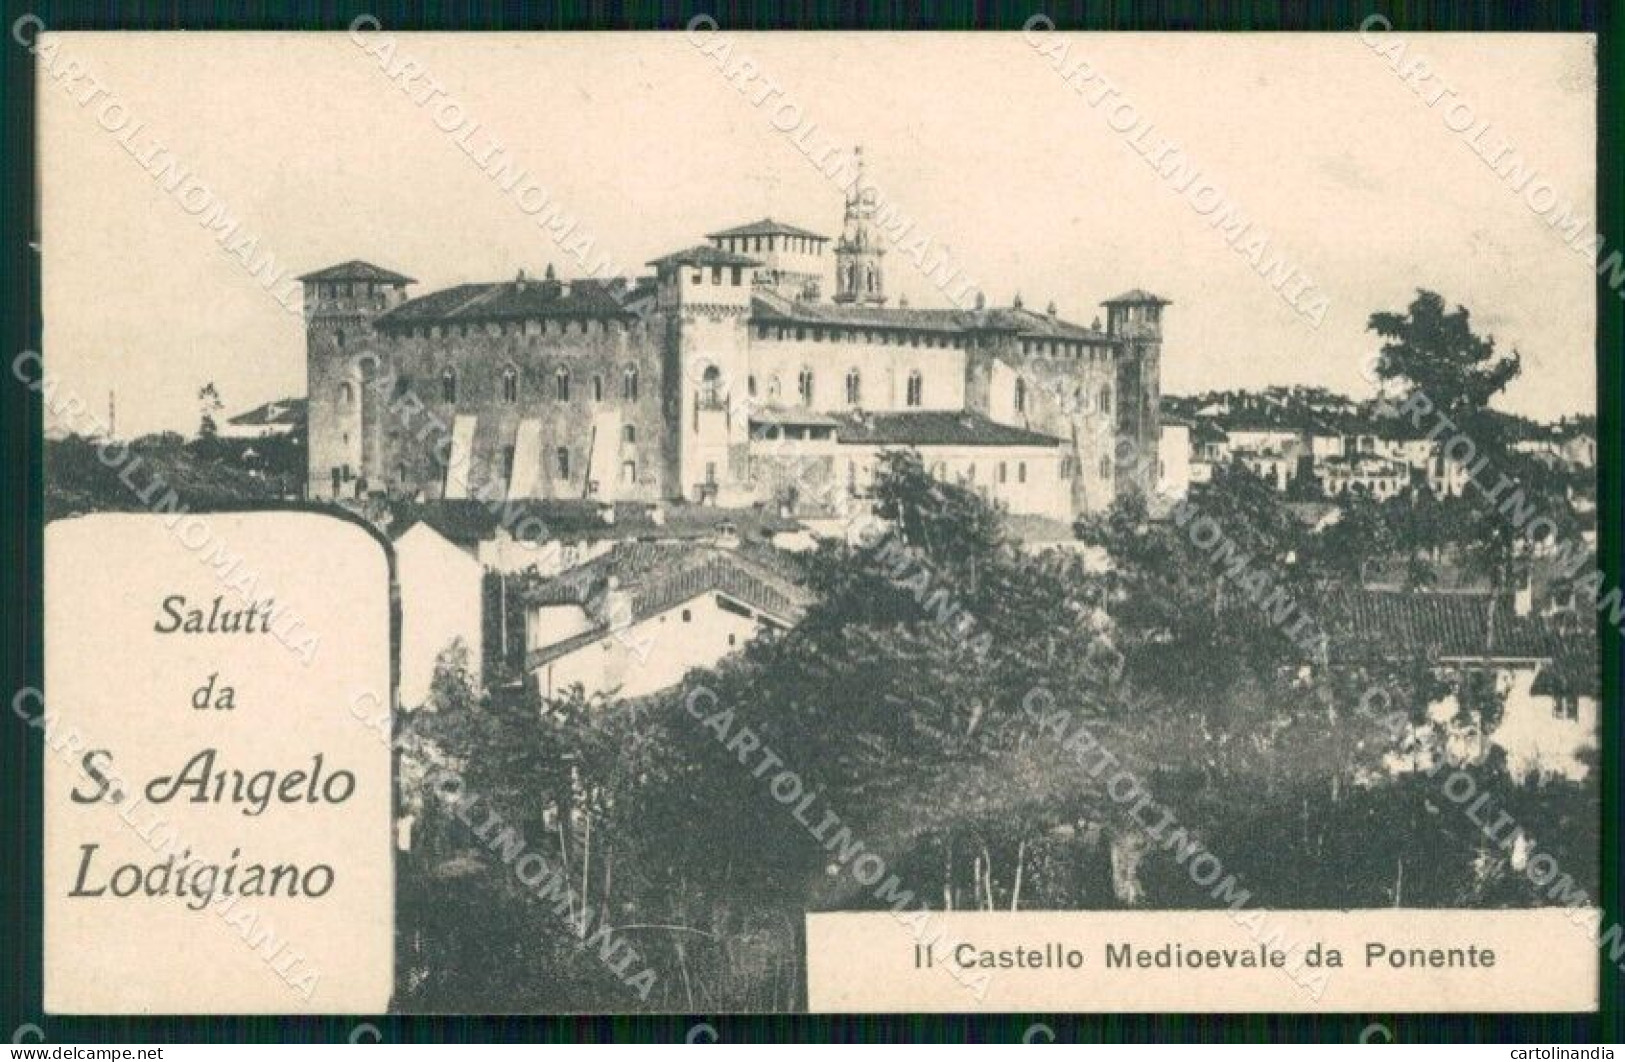 Lodi Sant'Angelo Lodigiano Saluti Da Castello Medioevale ABRASA Cartolina RT1498 - Lodi